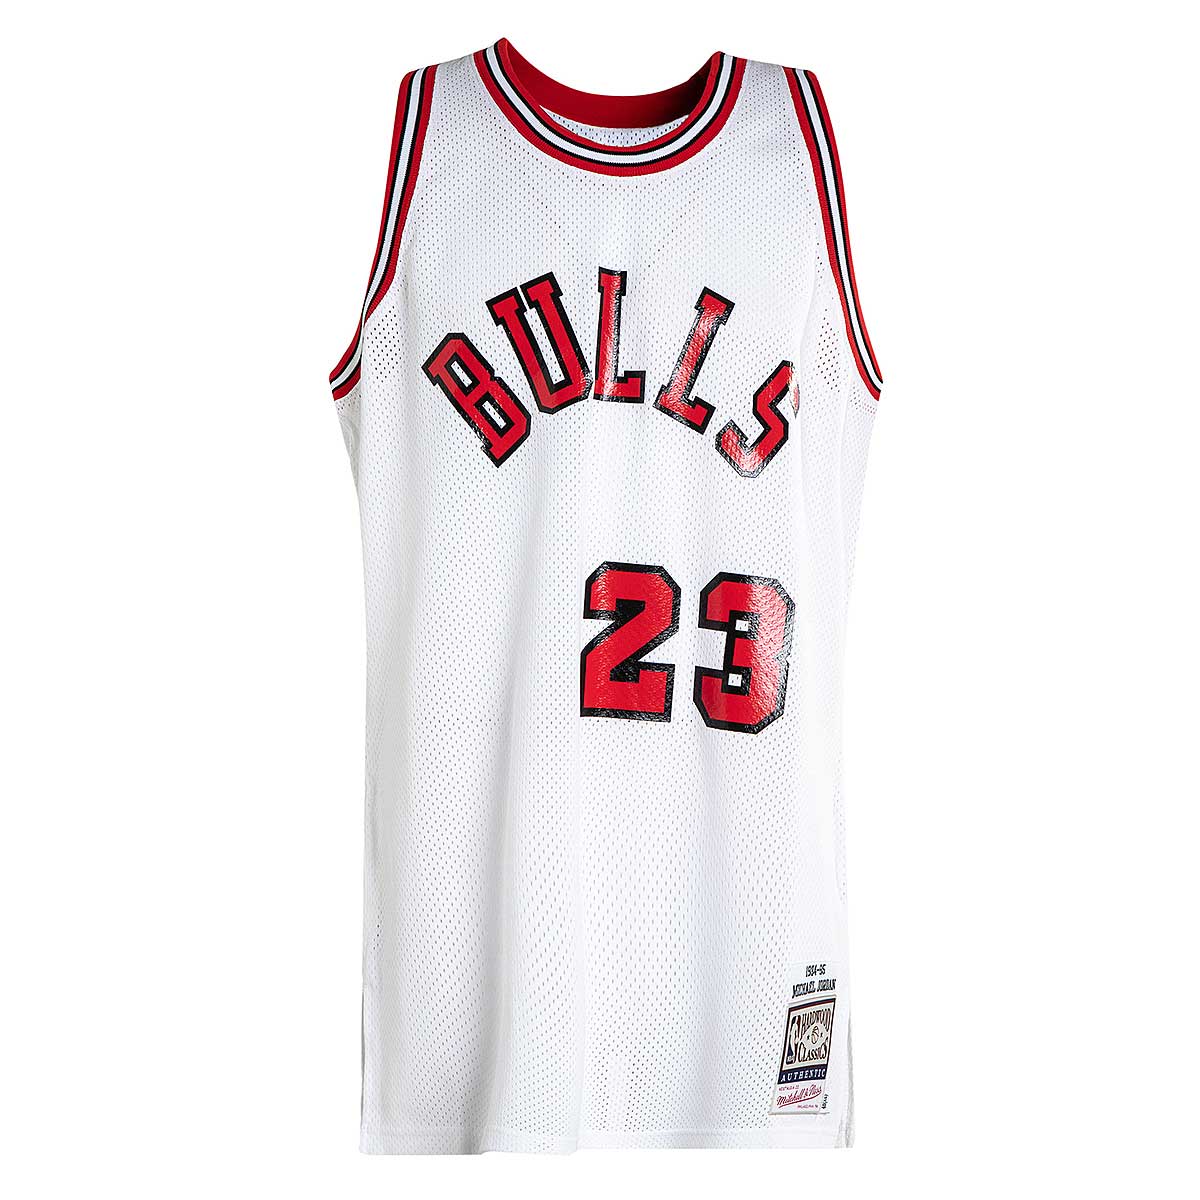 Michael Air Jordan Flight Club NBA Chicago Bulls Nike Sweatshirt M White  Vintage